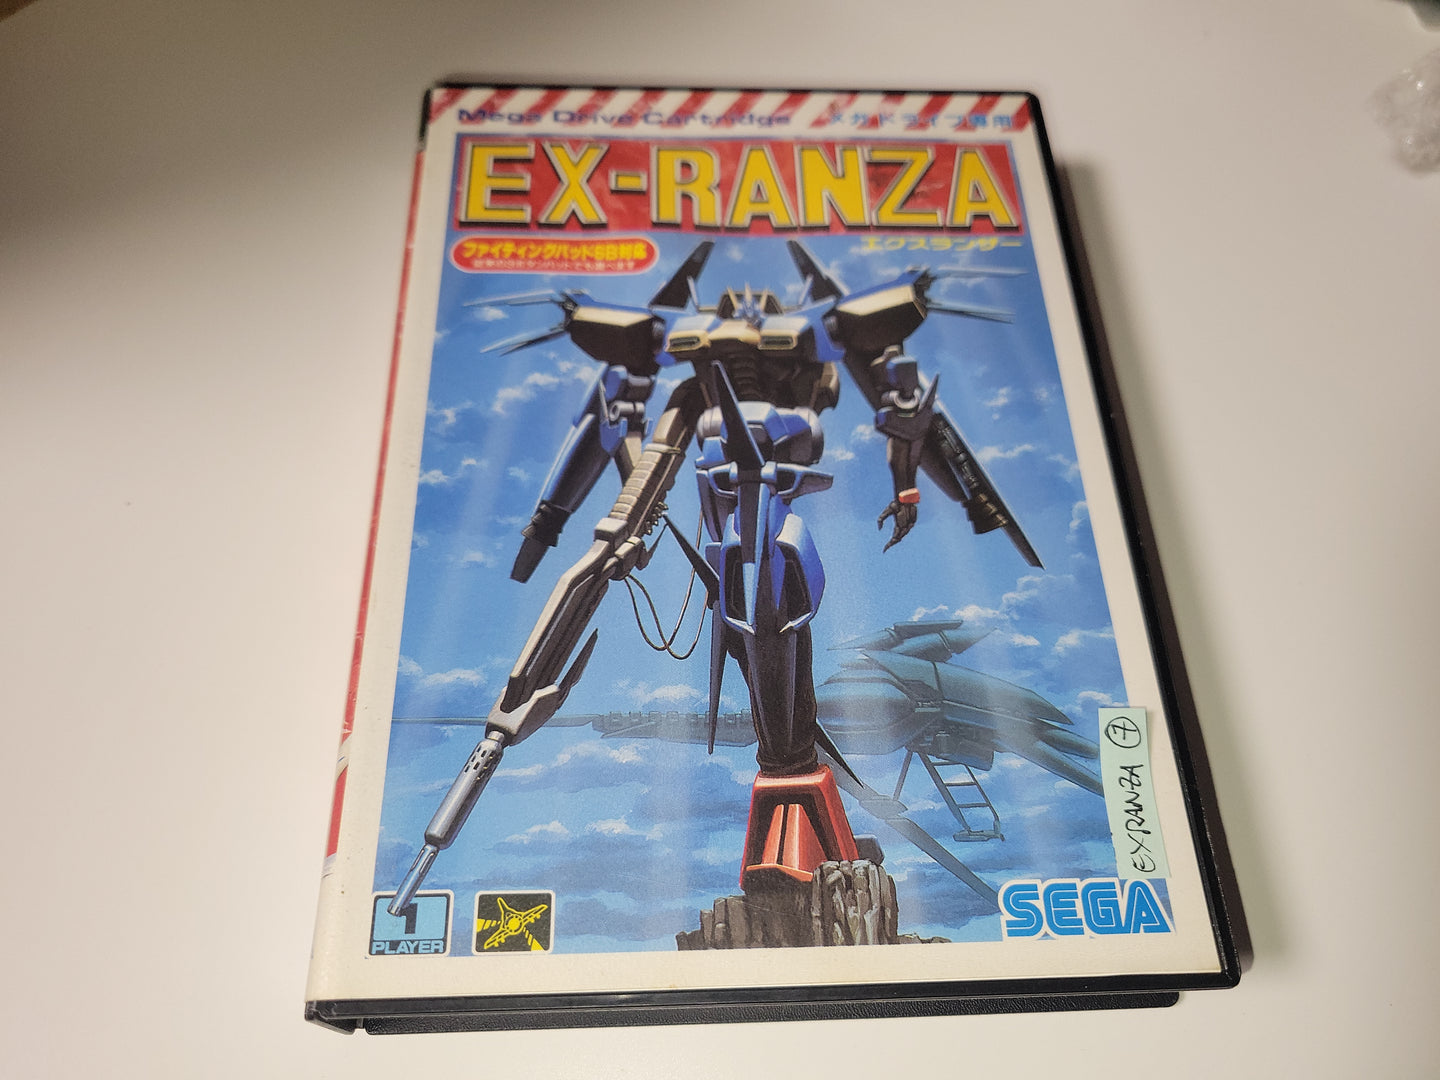 Ex-Ranza - Sega MD MegaDrive